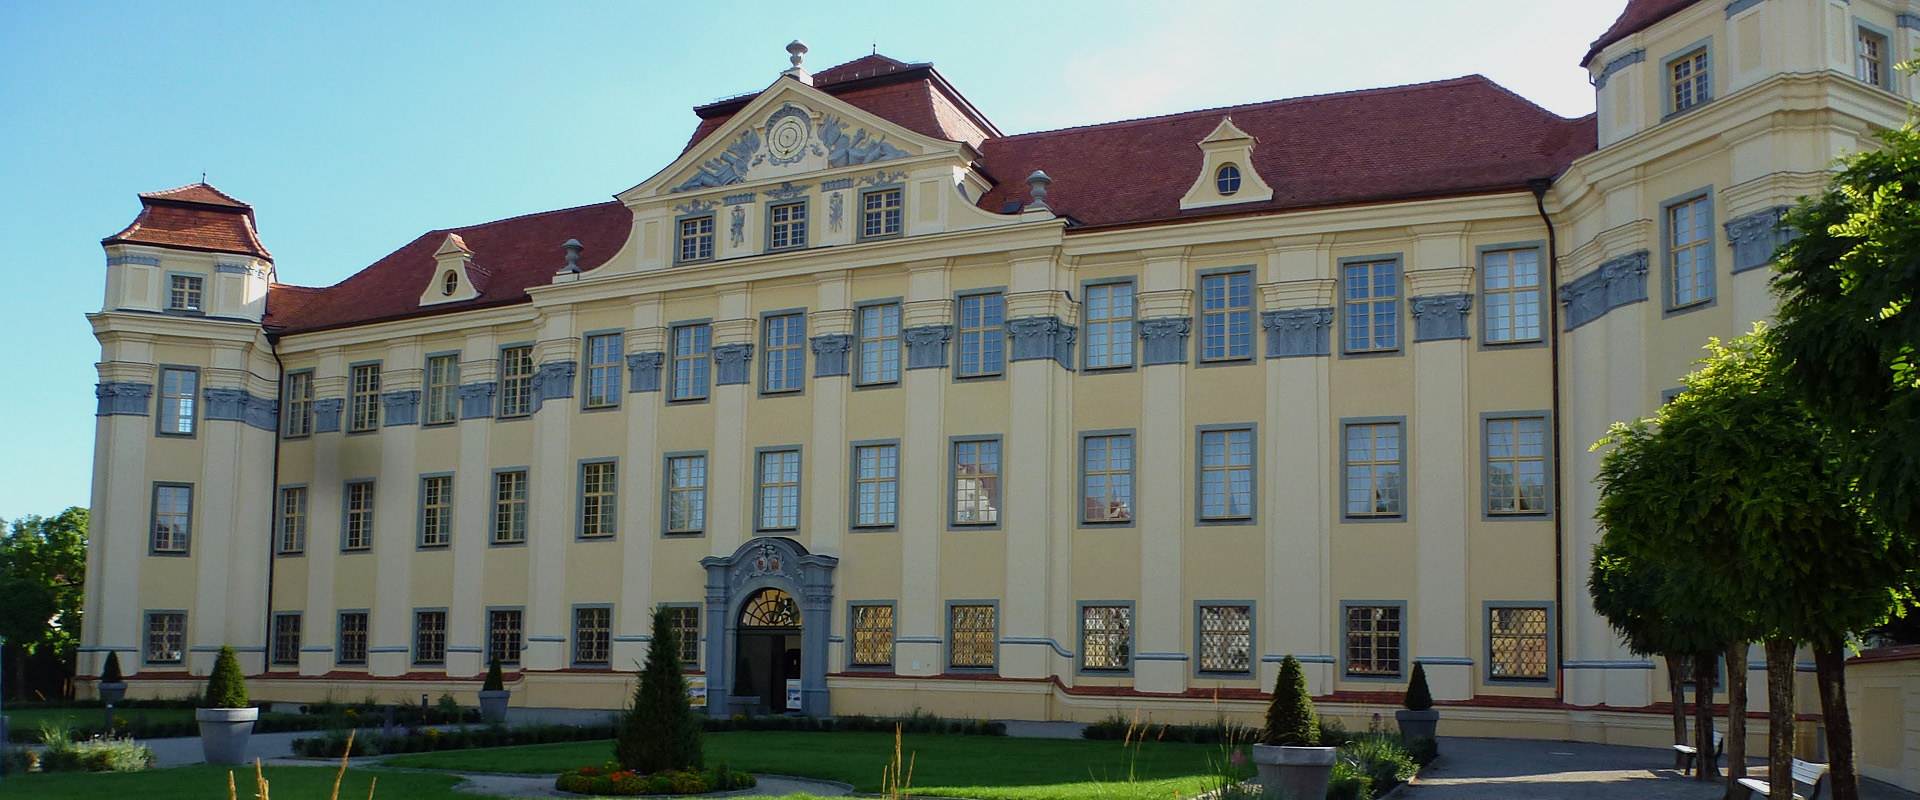 Schloss Tettnang im neuen, alten Look